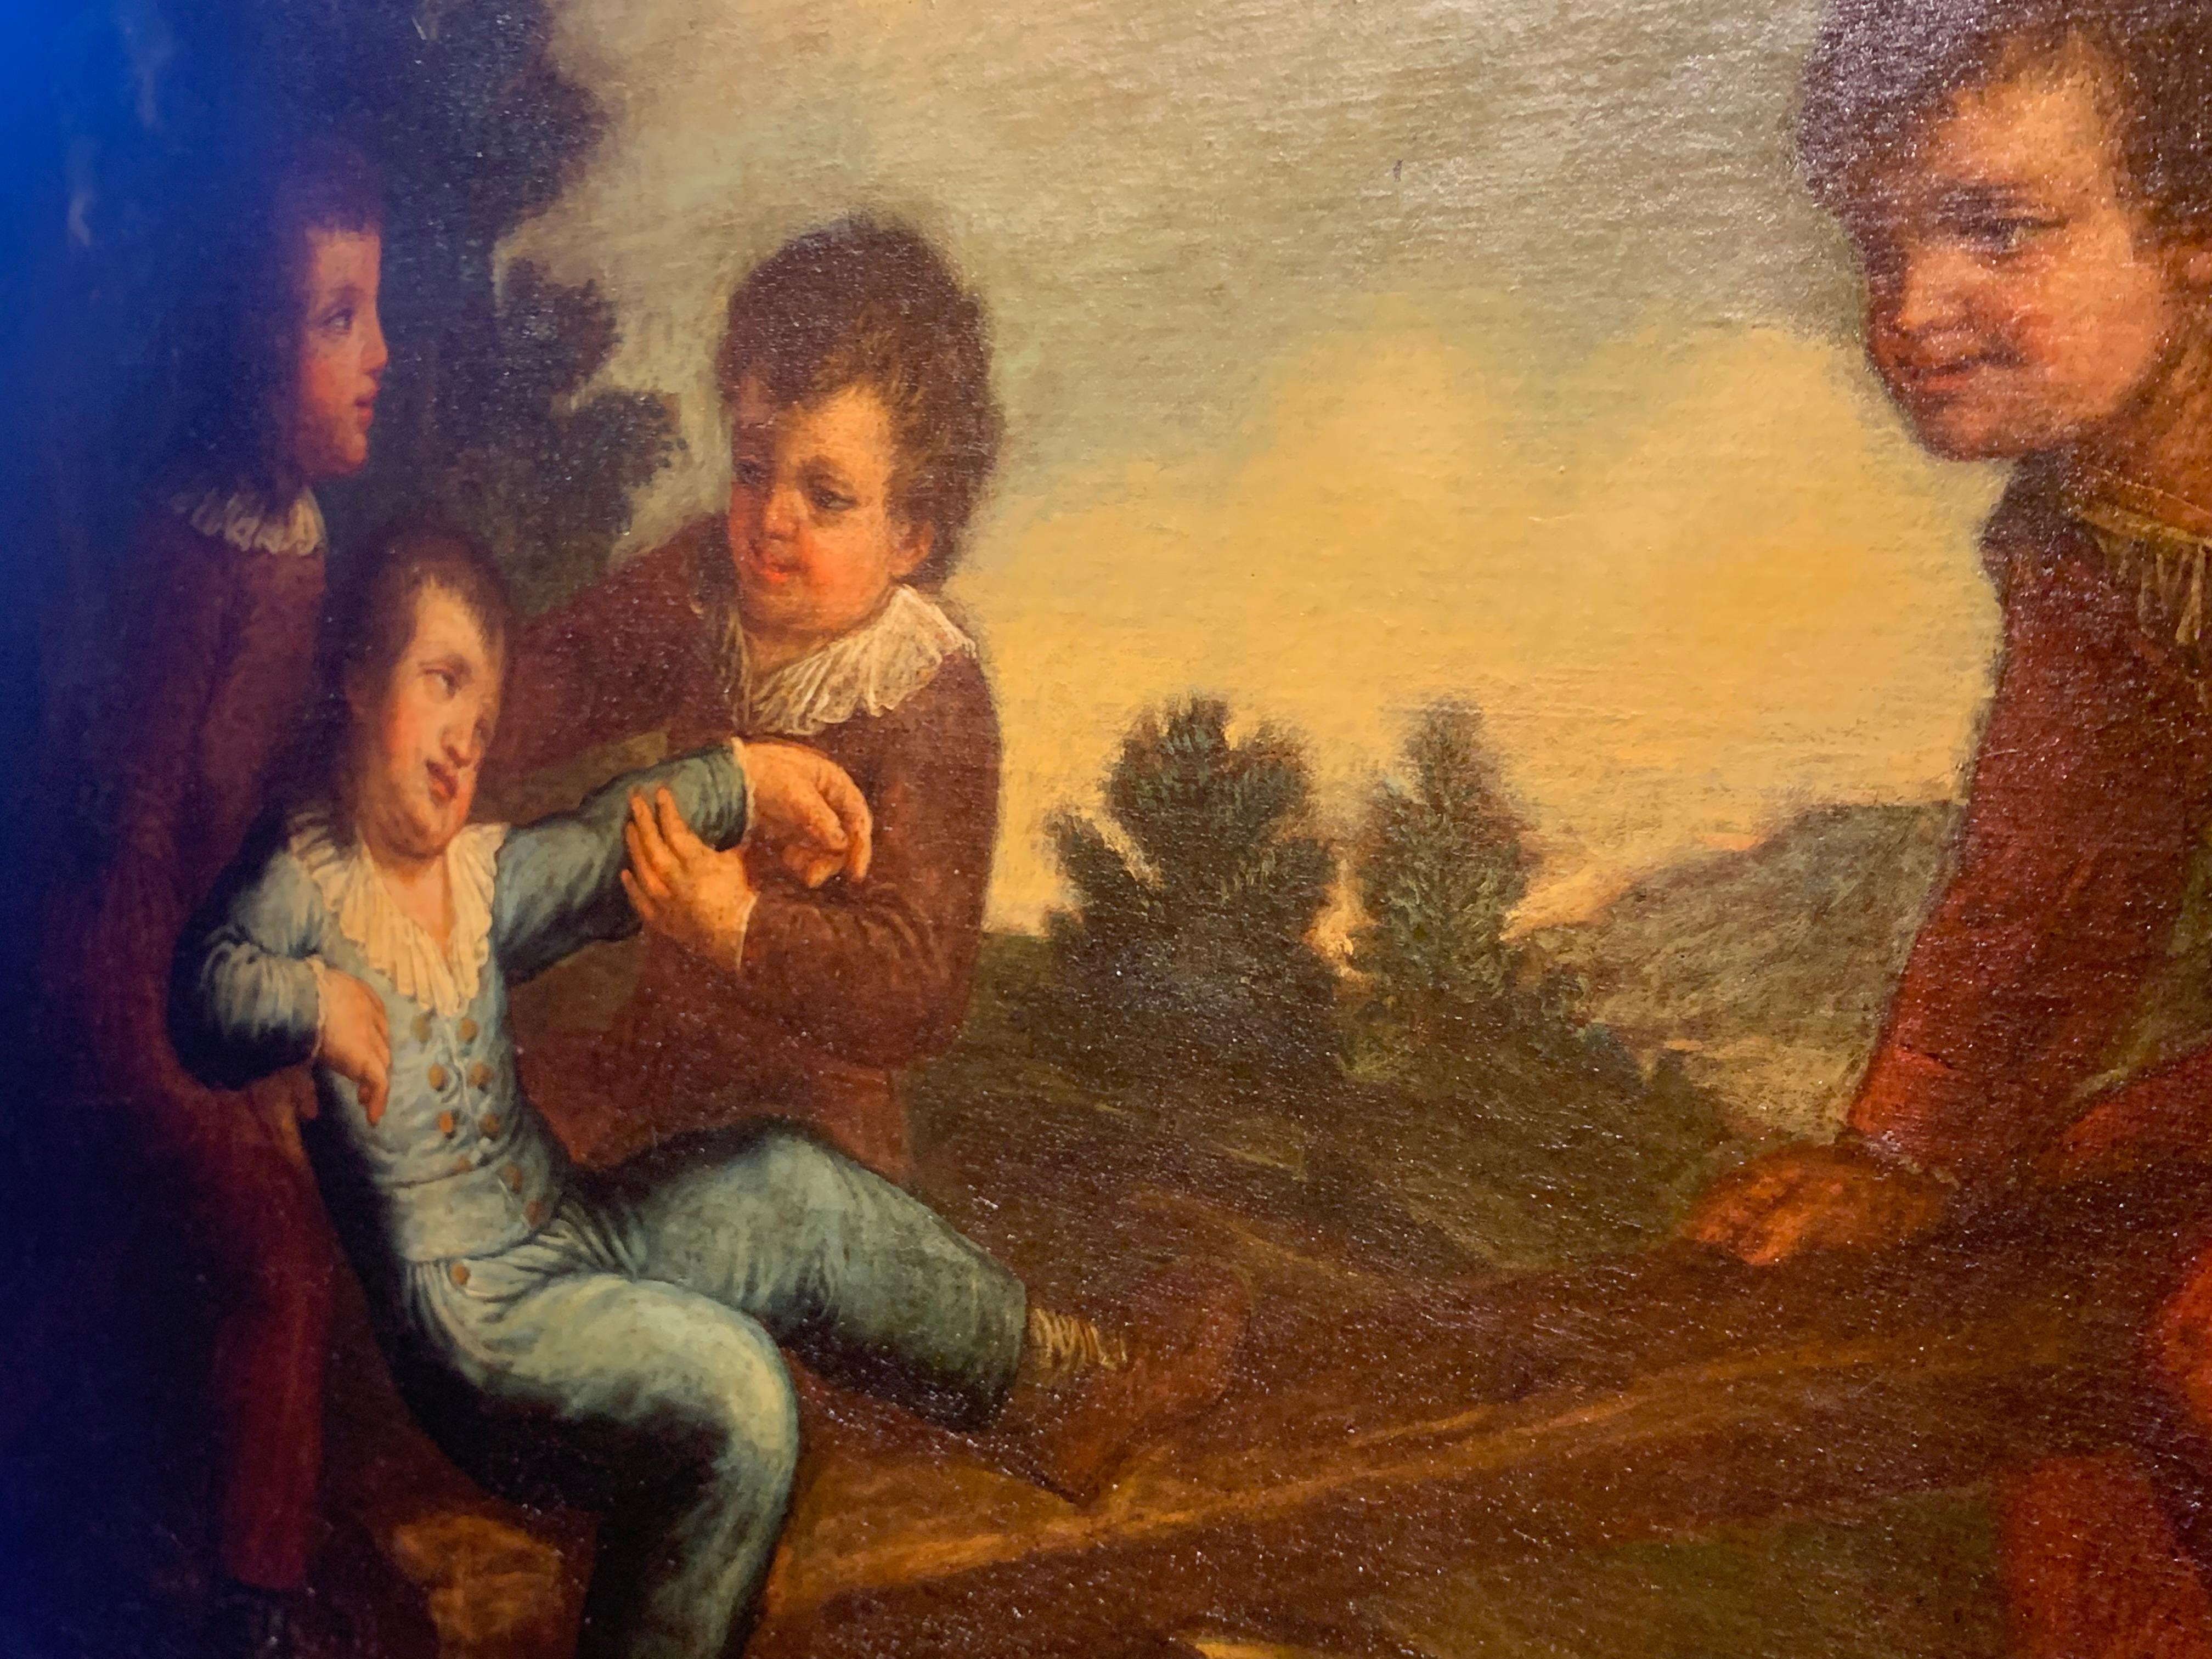 Das Gemälde (mit vergoldetem Rahmen im Stil von Salvador Rosa 88 x 116 cm) zeigt eine Gruppe von vier Kindern, die im Freien auf einer Schaukel spielen, wahrscheinlich ein Scherz, wie der zufriedene Gesichtsausdruck des Kindes auf der rechten Seite